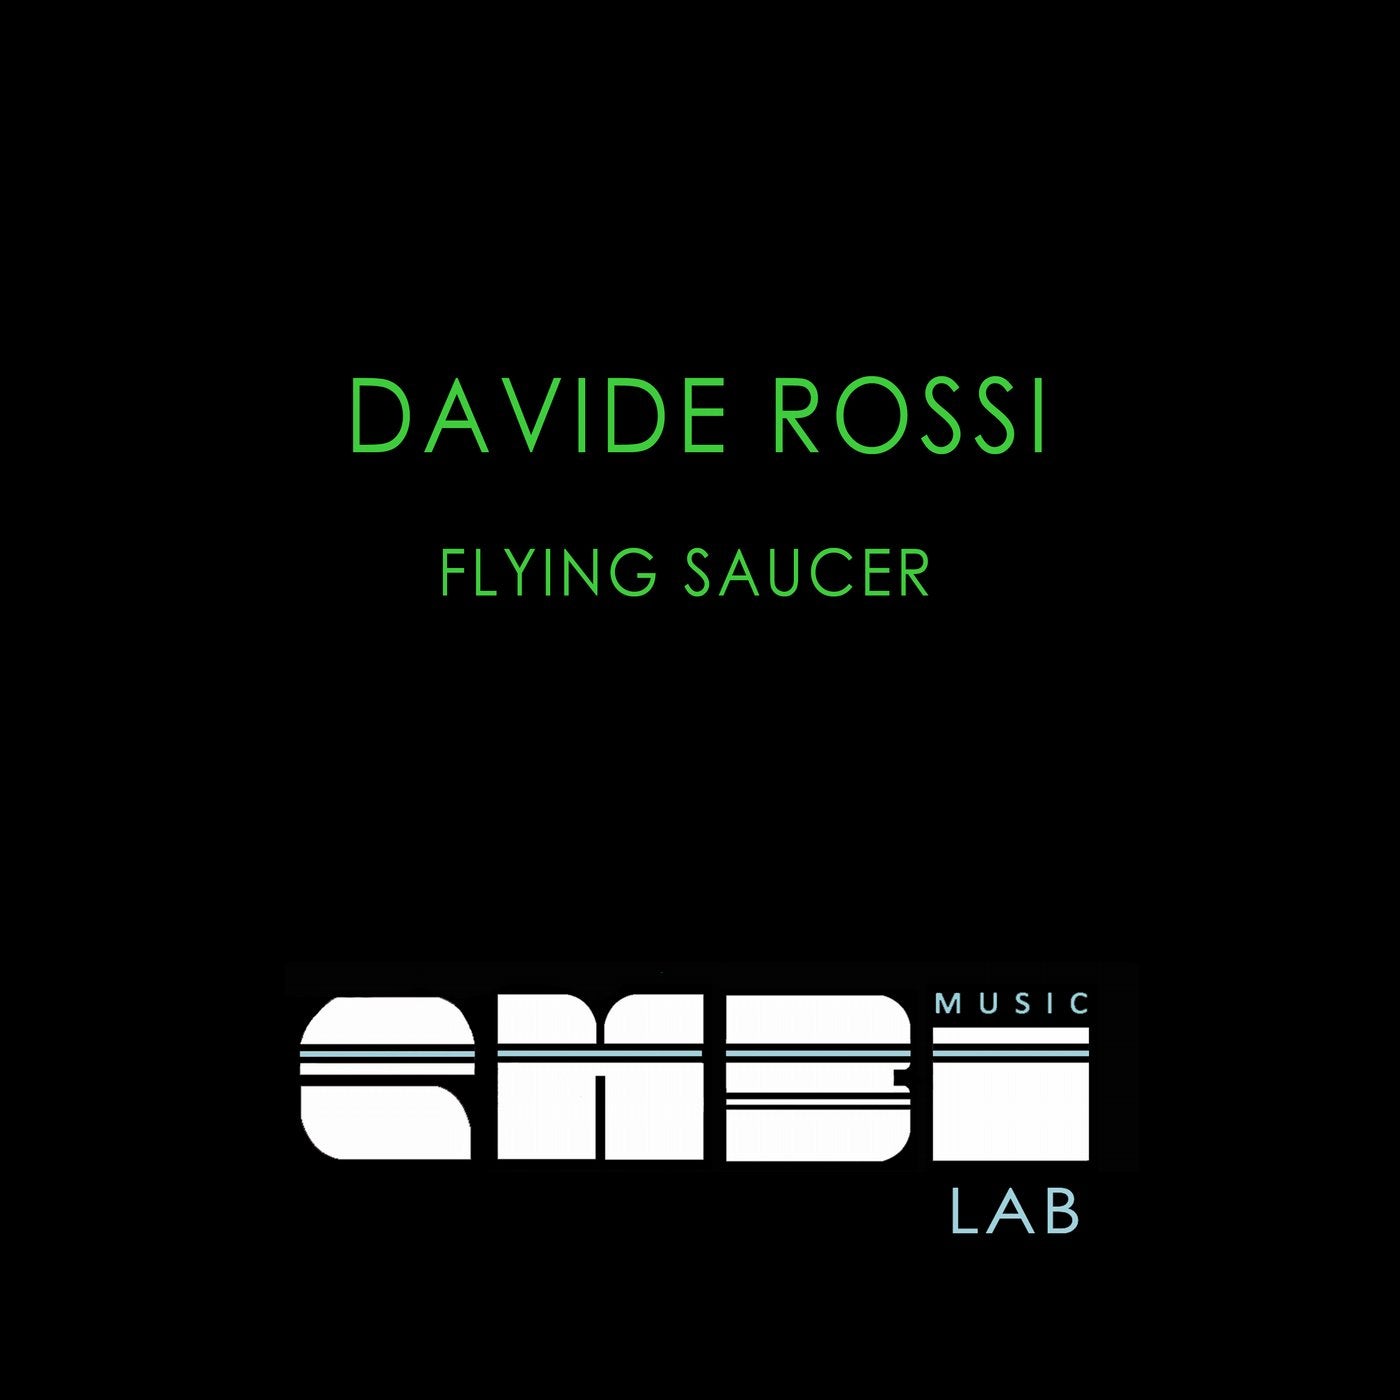 Davide Rossi music - Beatport